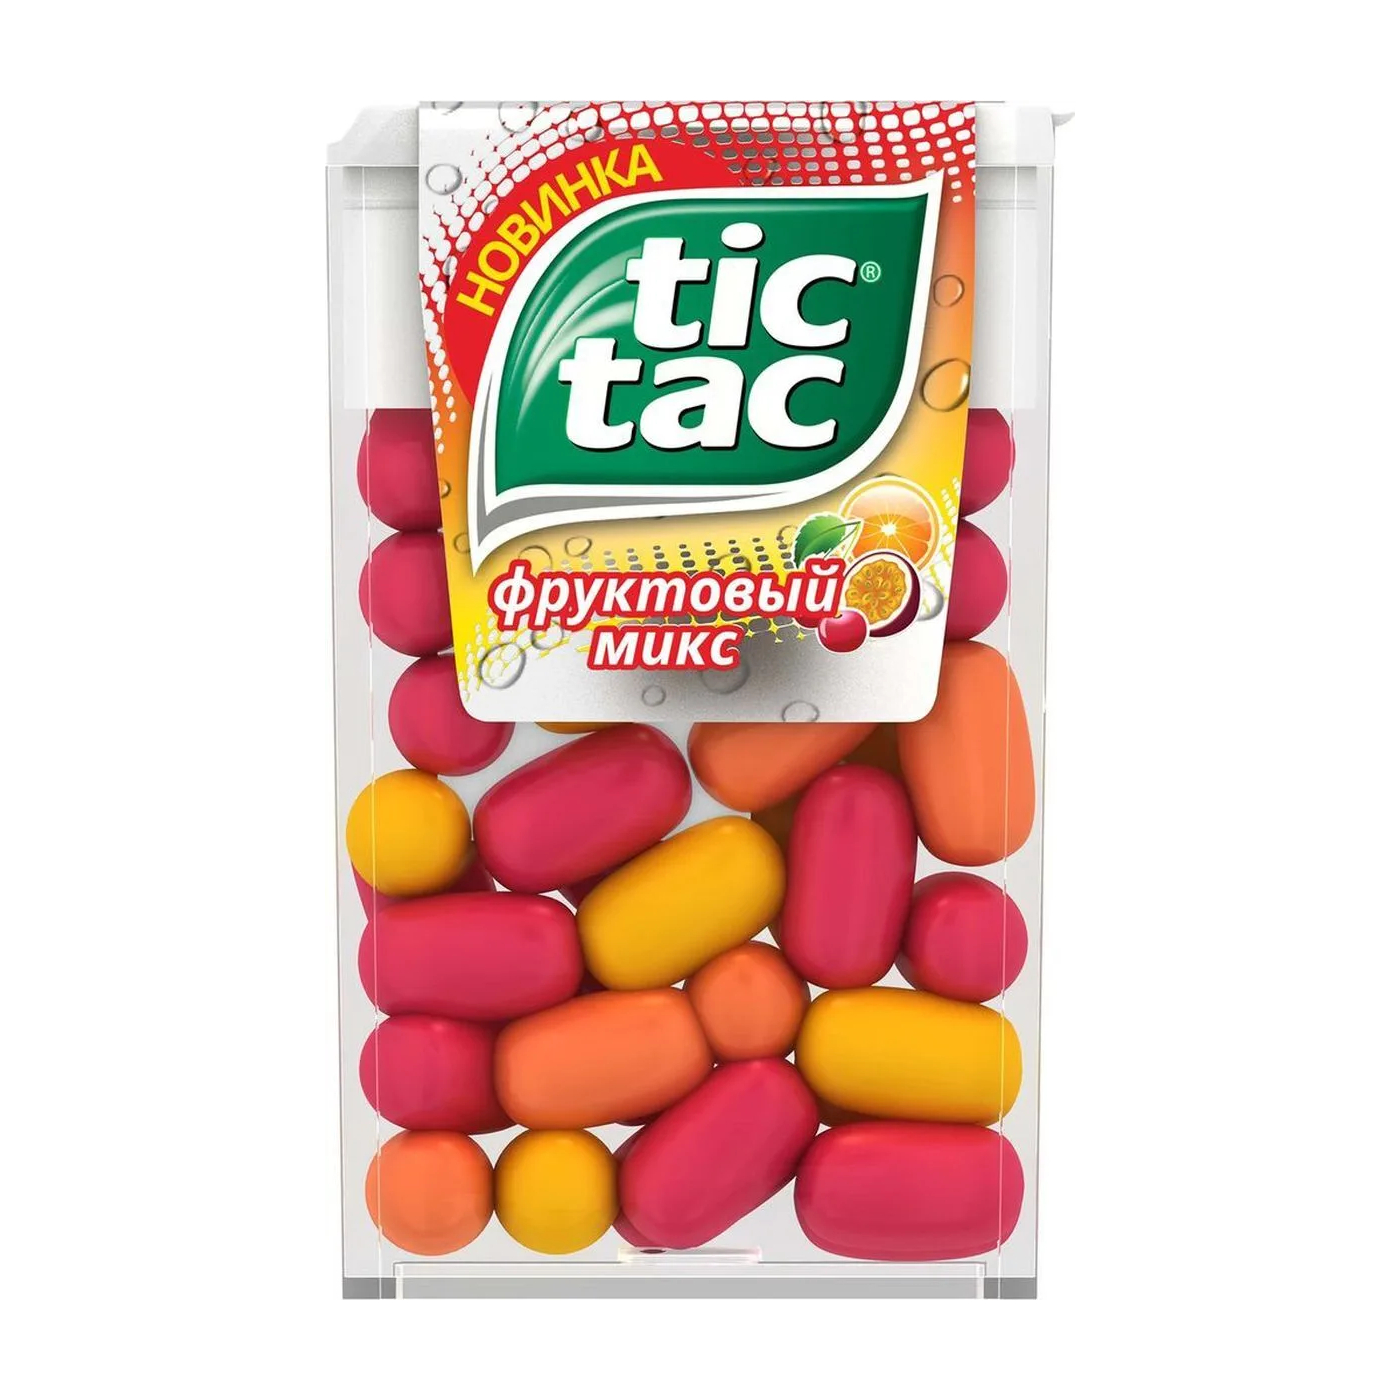 Драже Tic Tac фруктовый микс, 16 г драже tic tac апельсин 16 г